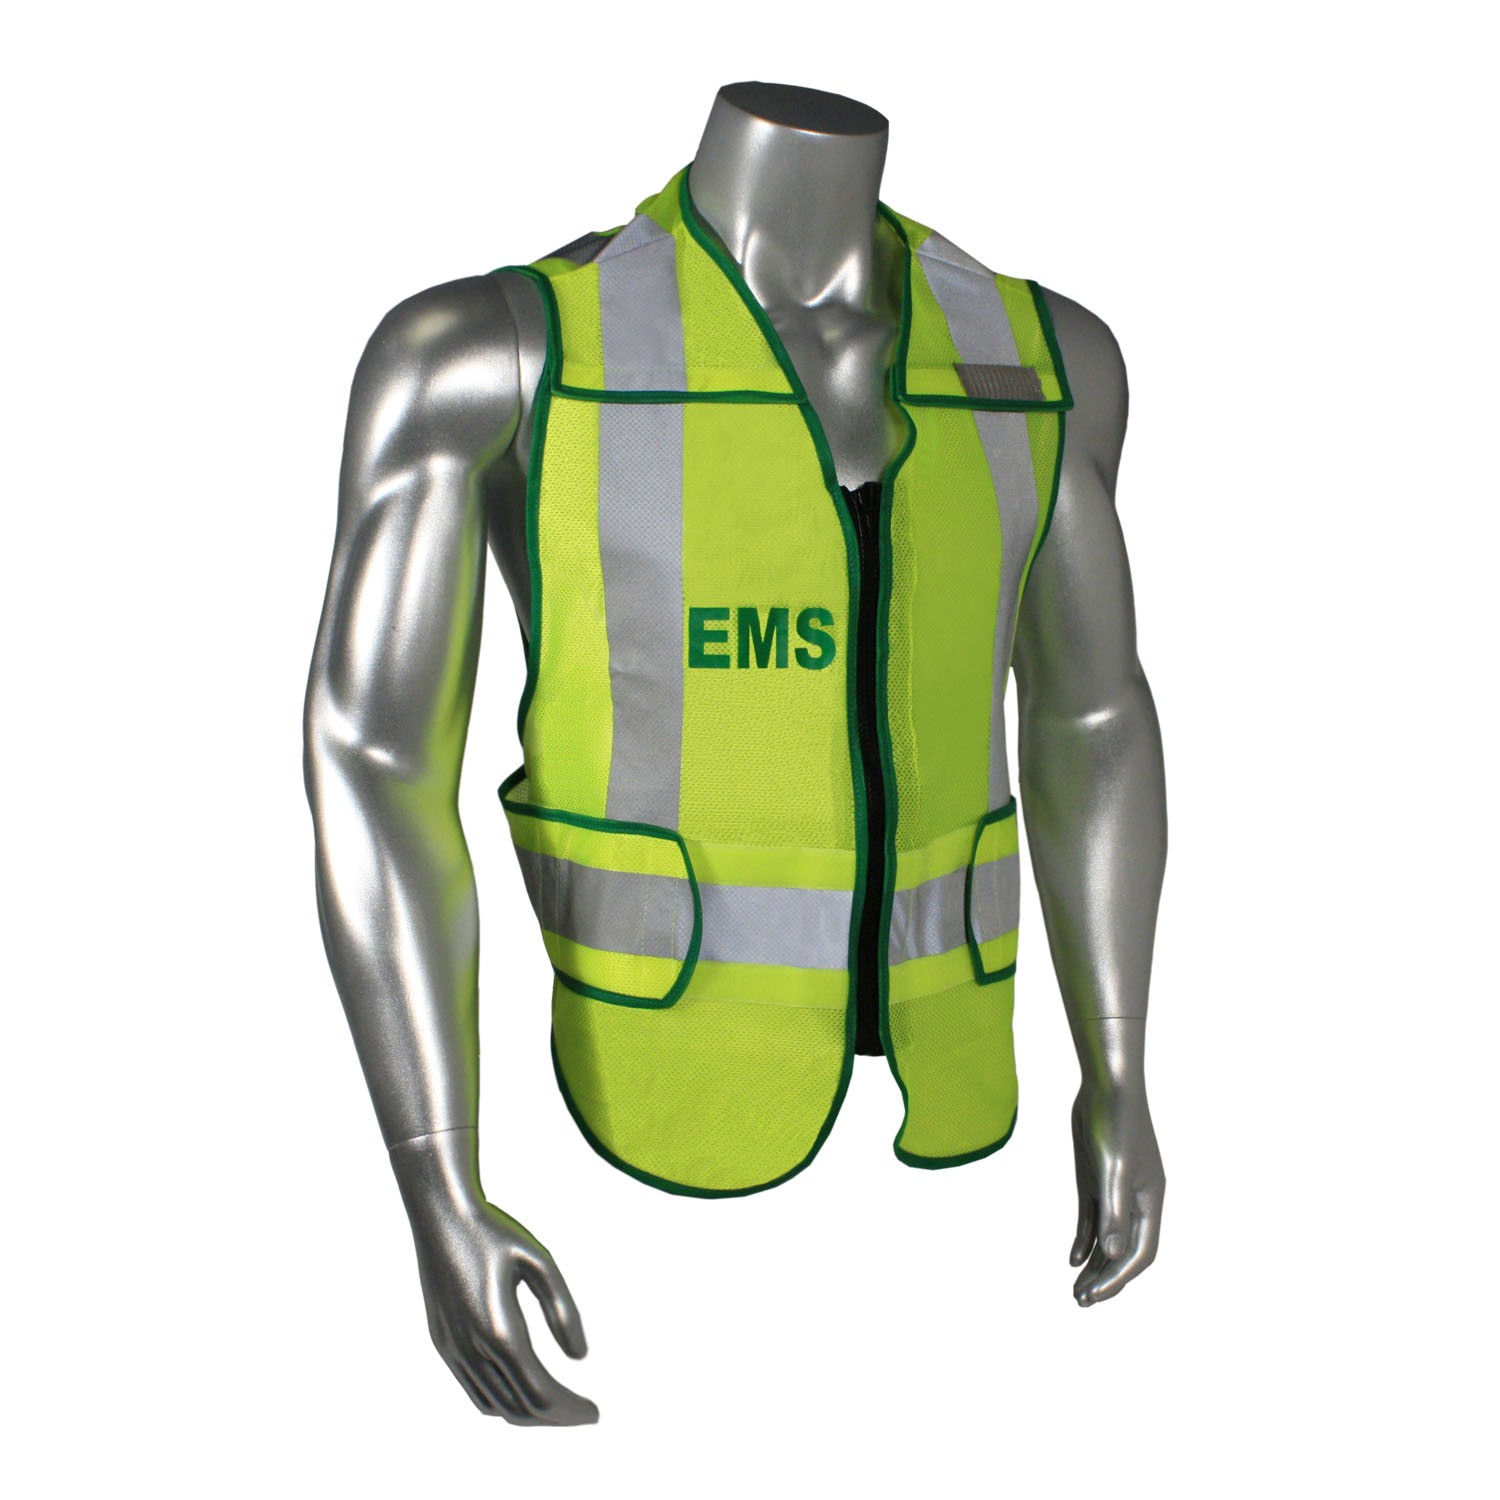 Breakaway Standard EMS Safety Vest, Green Trim (#LHV-207DSZR-EMS)